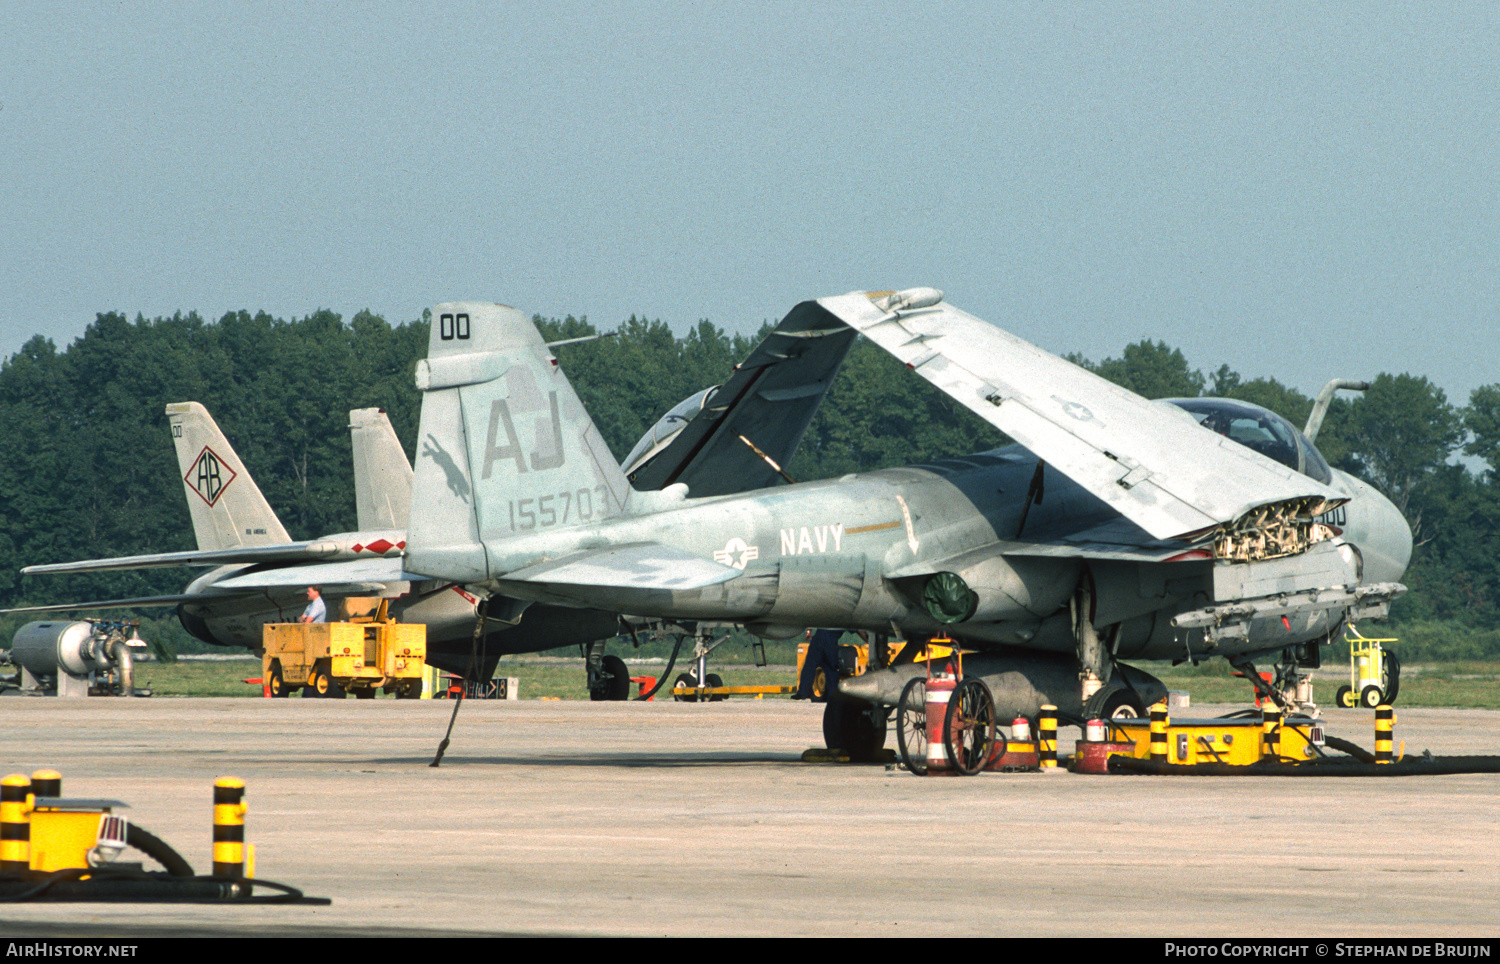 Aircraft Photo of 155703 | Grumman A-6E Intruder (G-128) | USA - Navy | AirHistory.net #545800